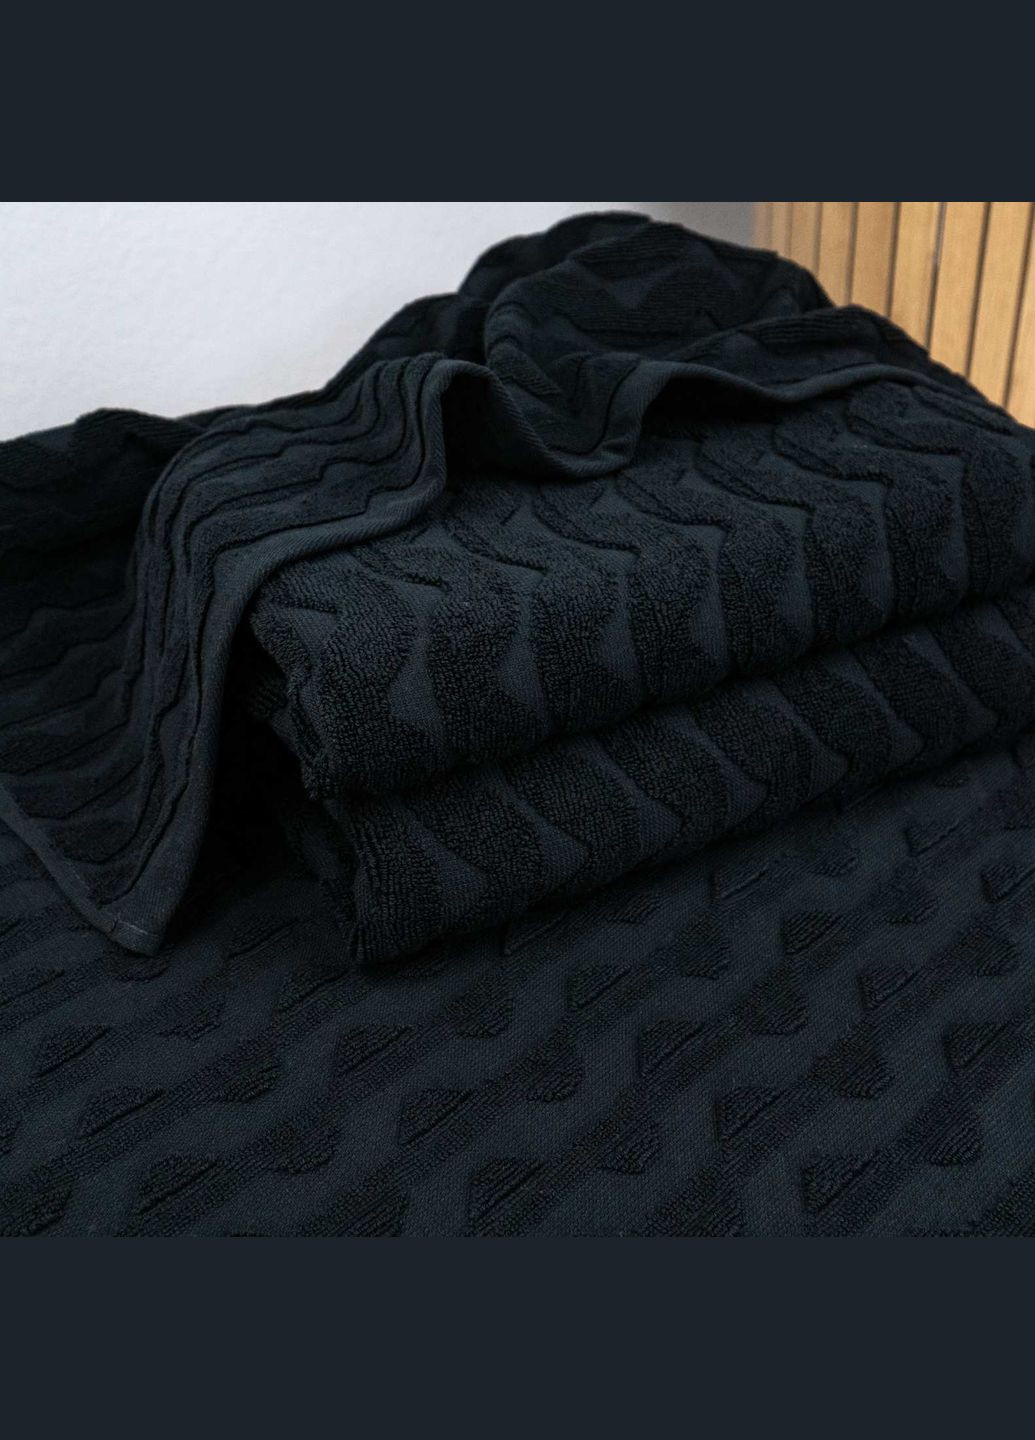 GM Textile комплект махровых полотенец жаккардовых волна 2шт 50х90см, 70х140см 500г/м2 () черный производство -